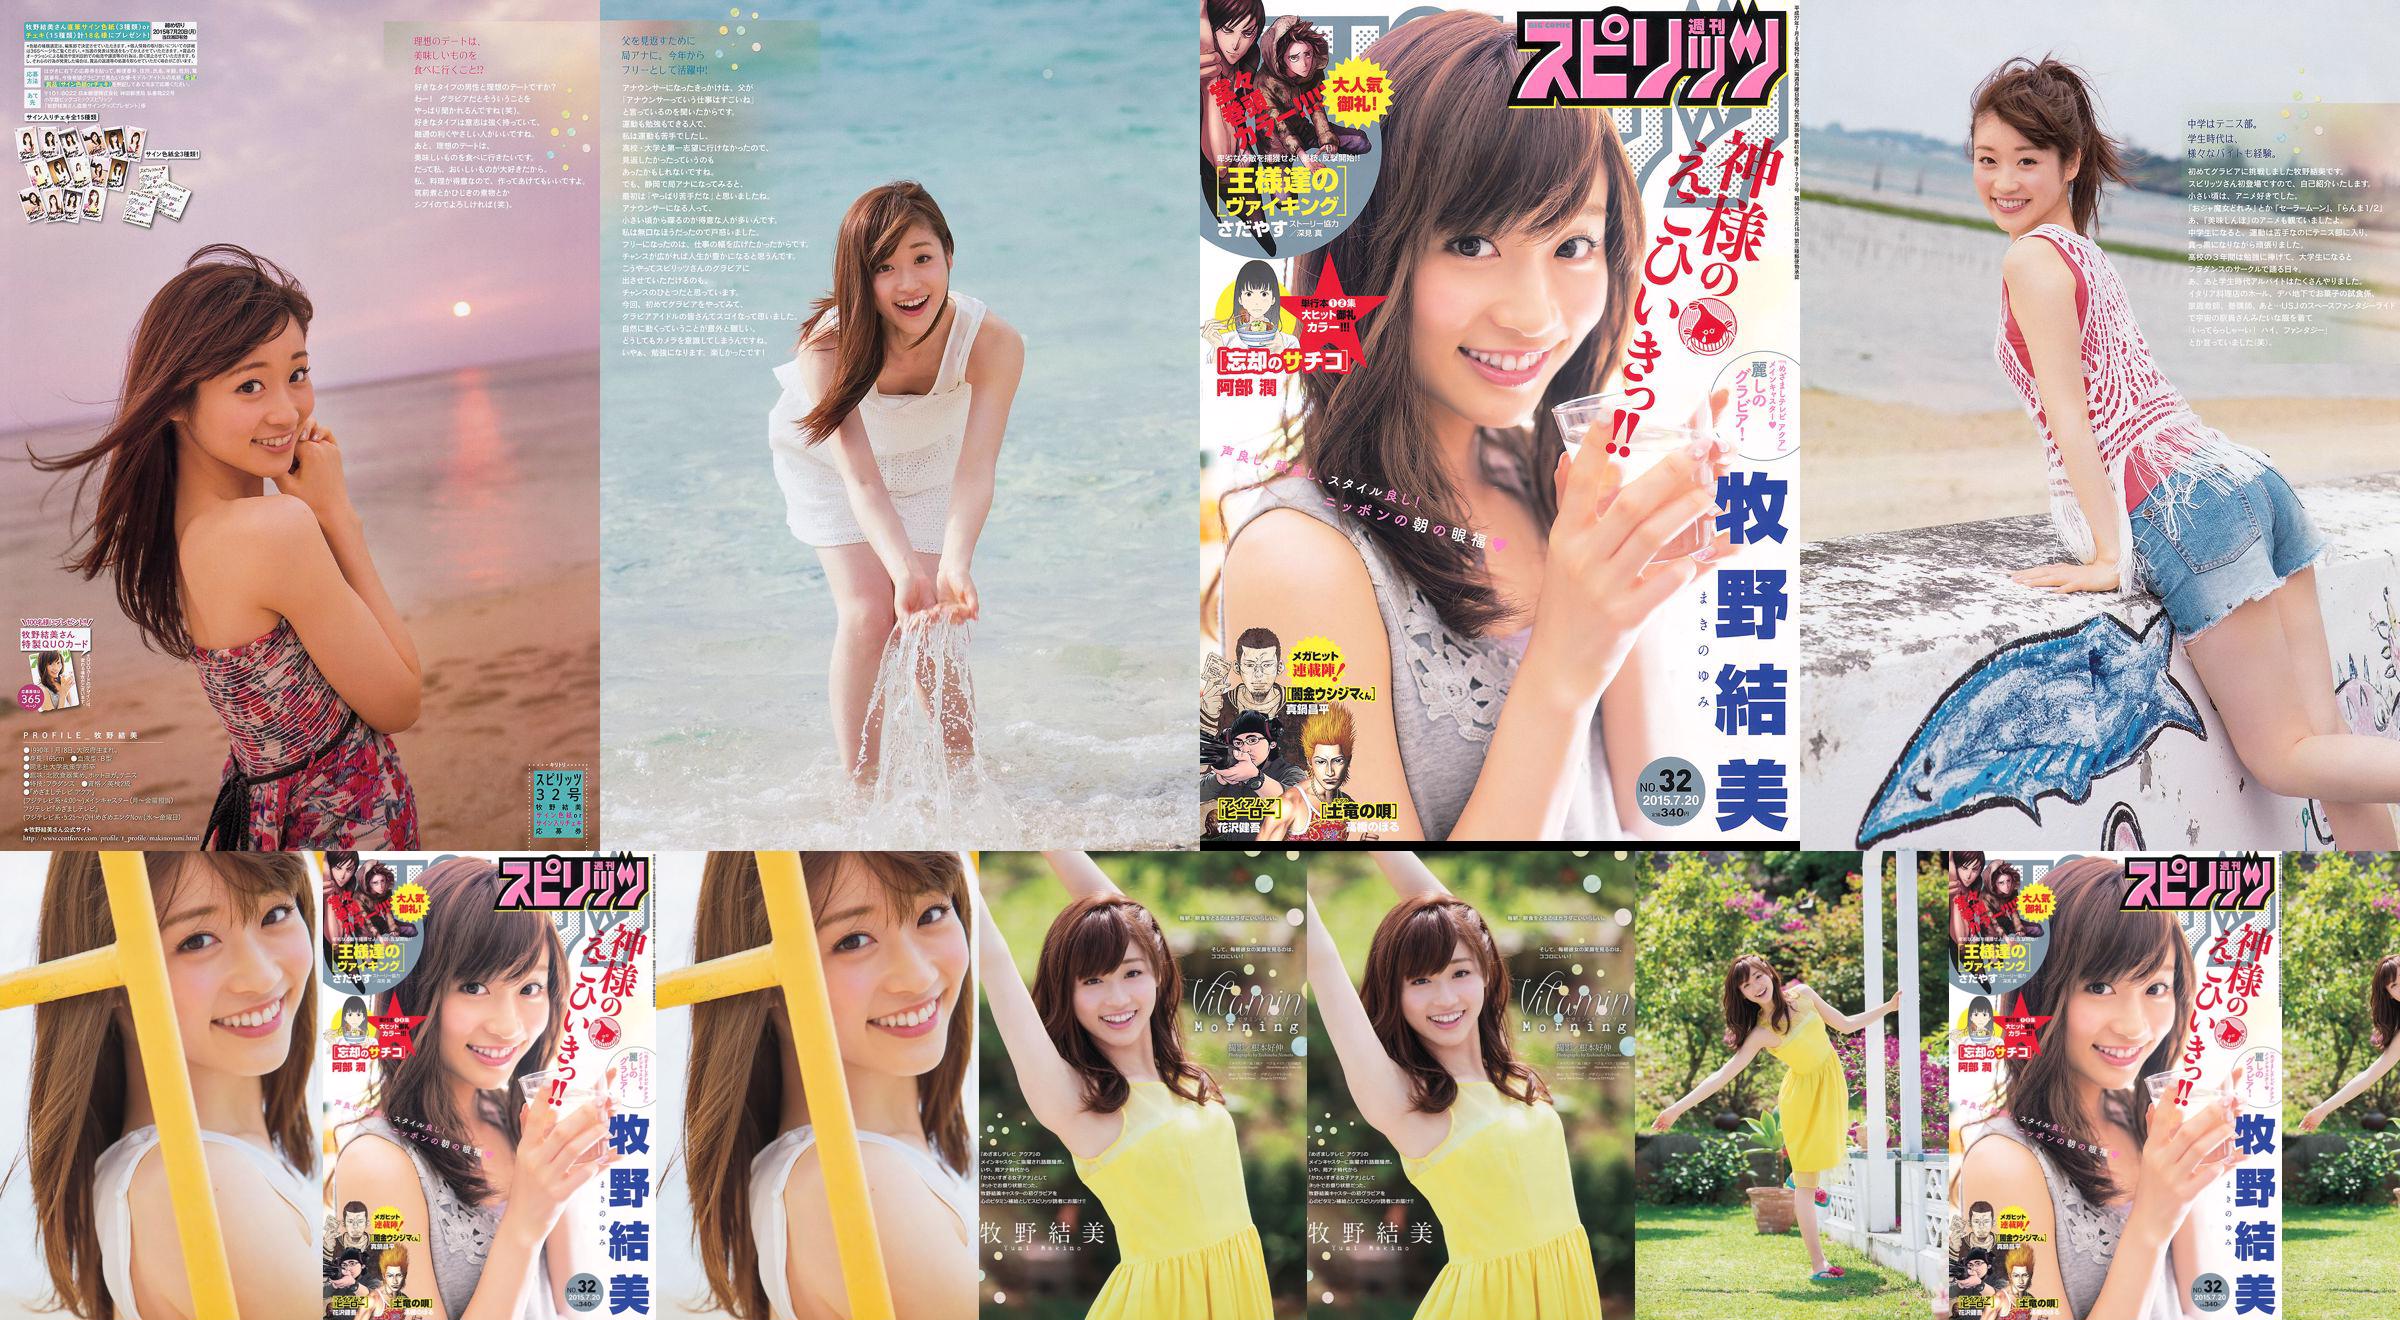 [Grands esprits de la bande dessinée hebdomadaire] Yumi Makino 2015 N ° 32 Photo Magazine No.69dc99 Page 4